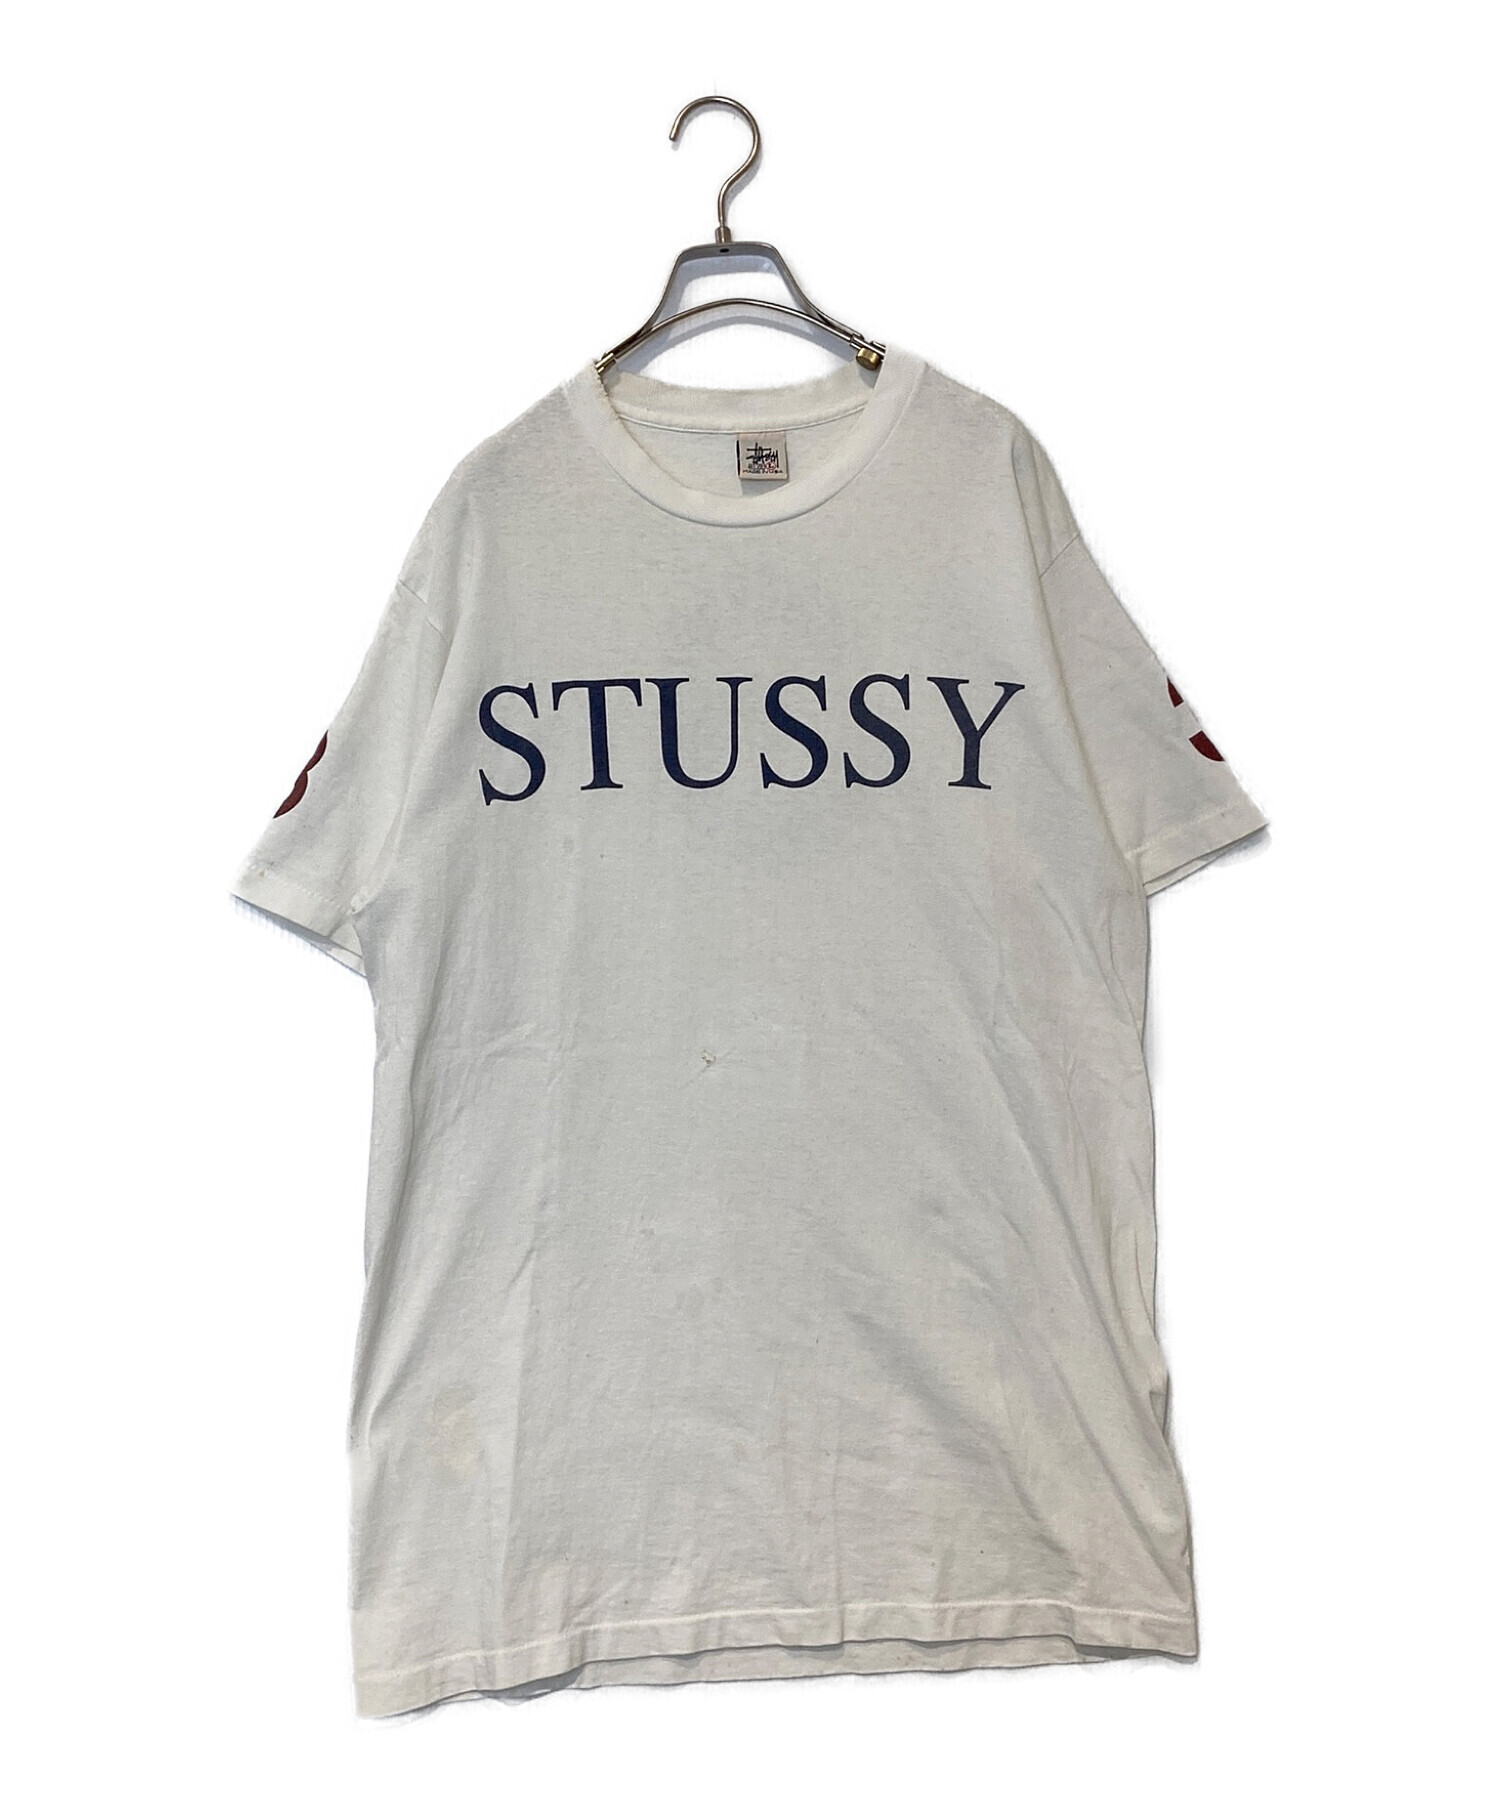 中古・古着通販】stussy (ステューシー) 【古着】Tシャツ ホワイト